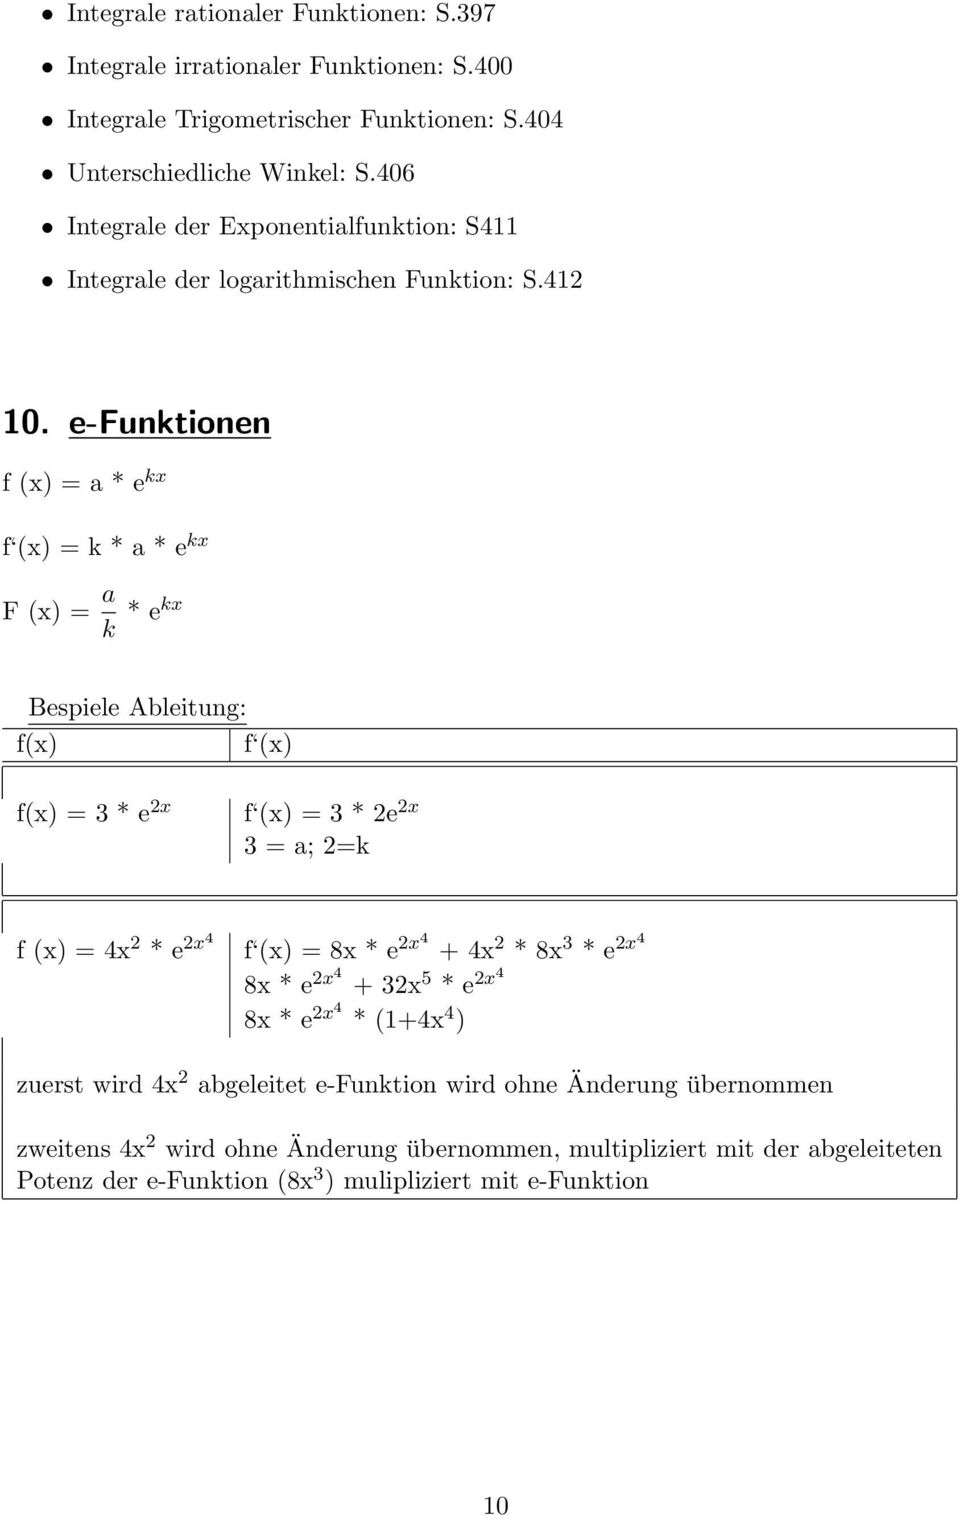 e-funktionen f (x) = a * e kx f (x) = k * a * e kx F (x) = a k * ekx Bespiele Ableitung: f(x) f (x) f(x) = 3 * e 2x f (x) = 3 * 2e 2x 3 = a; 2=k f (x) = 4x 2 * e 2x4 f (x) = 8x